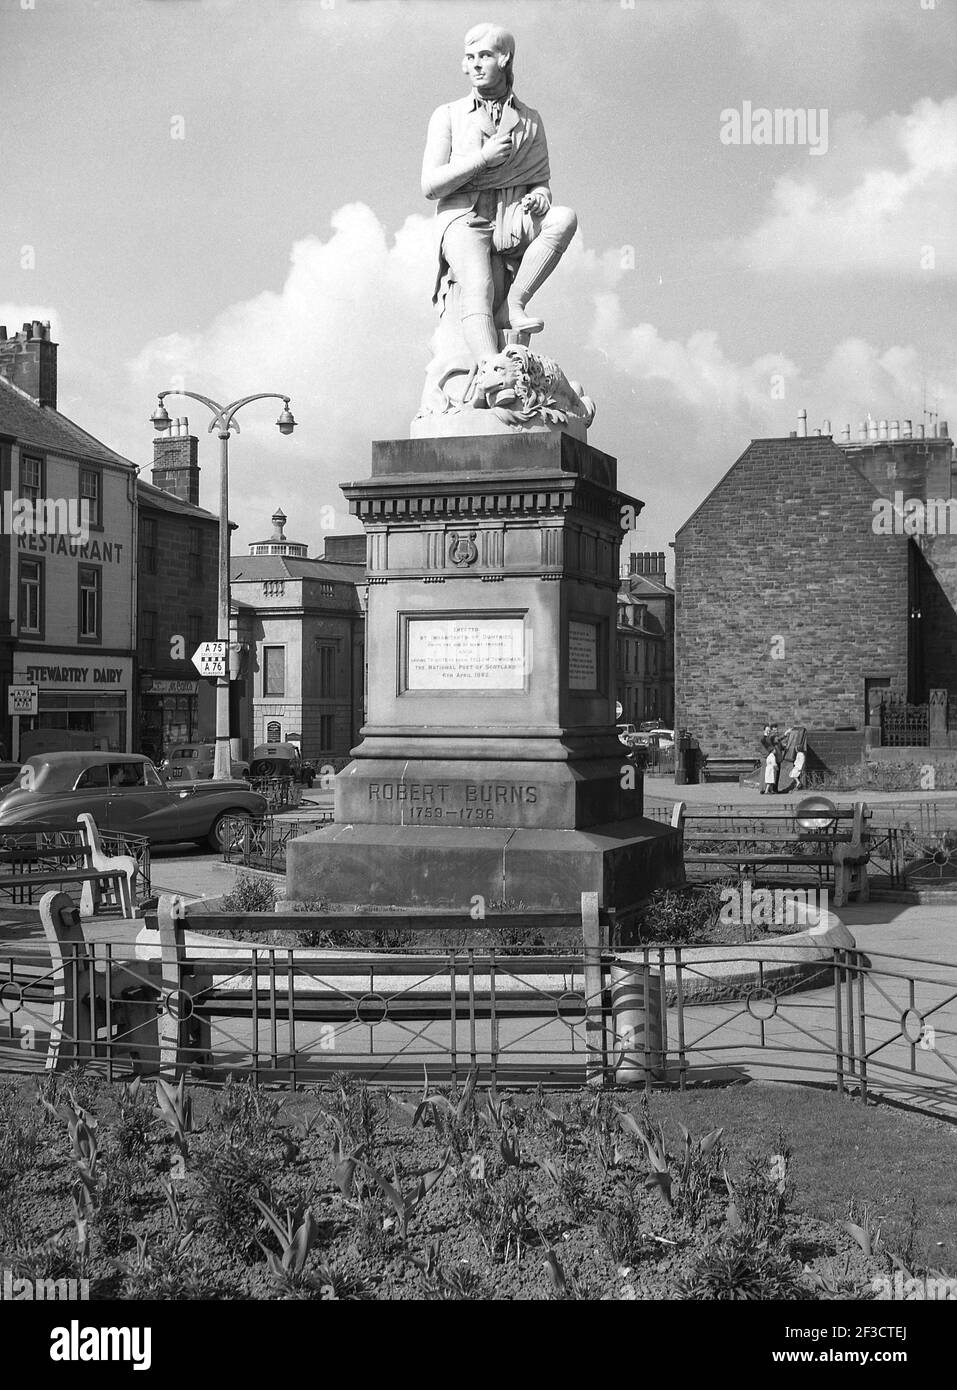 1961, historique, statue honorant l'écrivain écossais et poète national, Robert Burns, sur la place de la ville marchande de Dumries, en Écosse, où il a vécu de 1791 à 1796. Conçue par Amelia Robertson Hill, la statue a été sculptée à Carrare, en Italie, en 1882. Banque D'Images